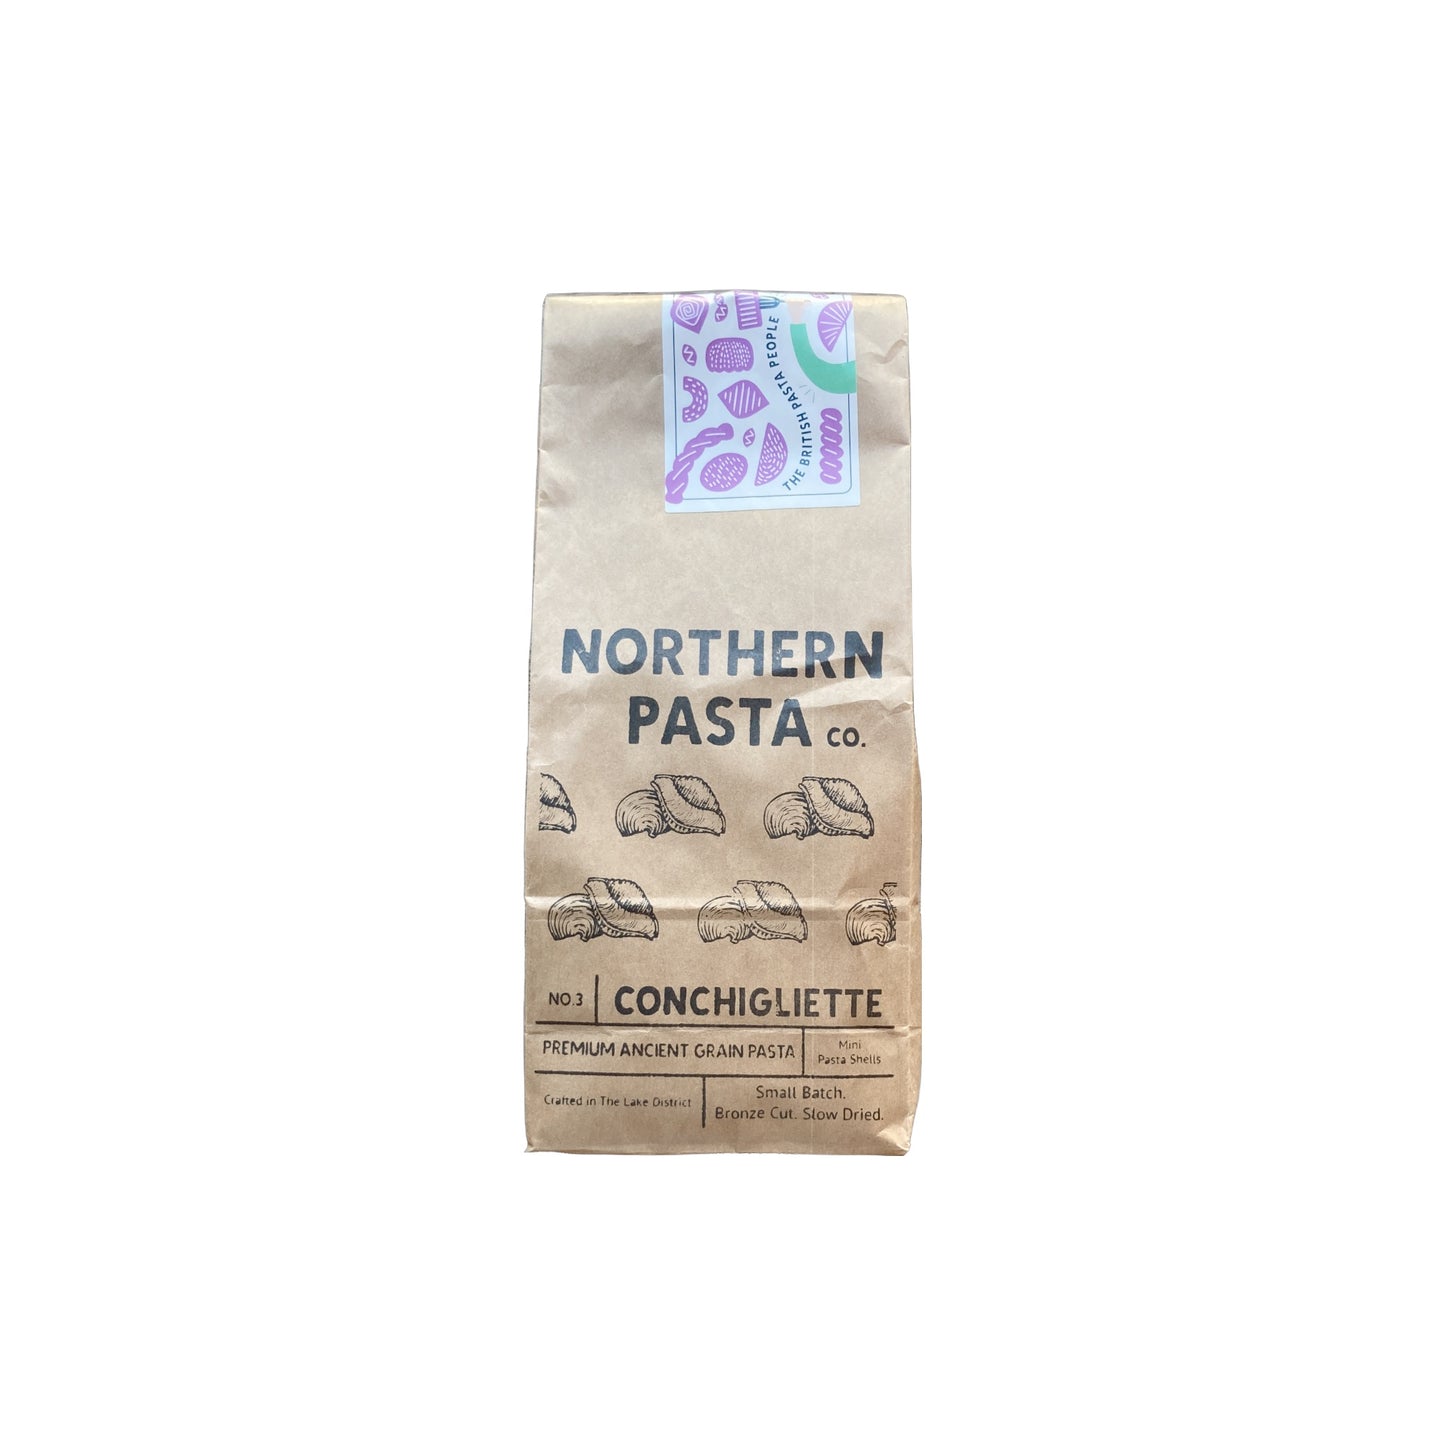 Northern Pasta Co. No3 Conchigliette 450g